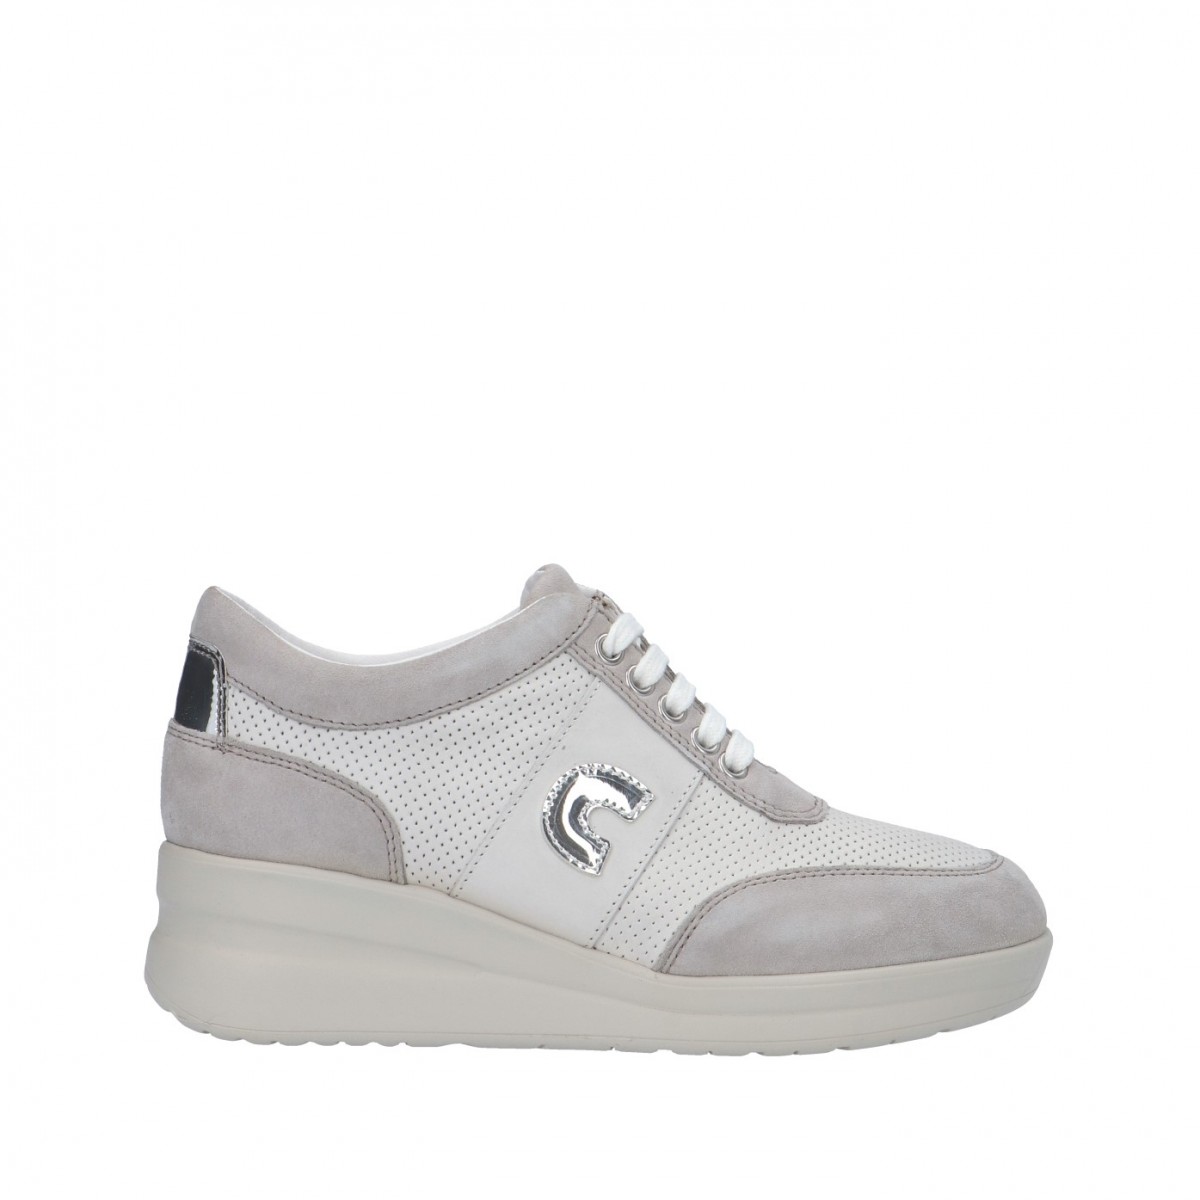 Cinzia soft Sneaker Bianco Zeppa IV16946 002